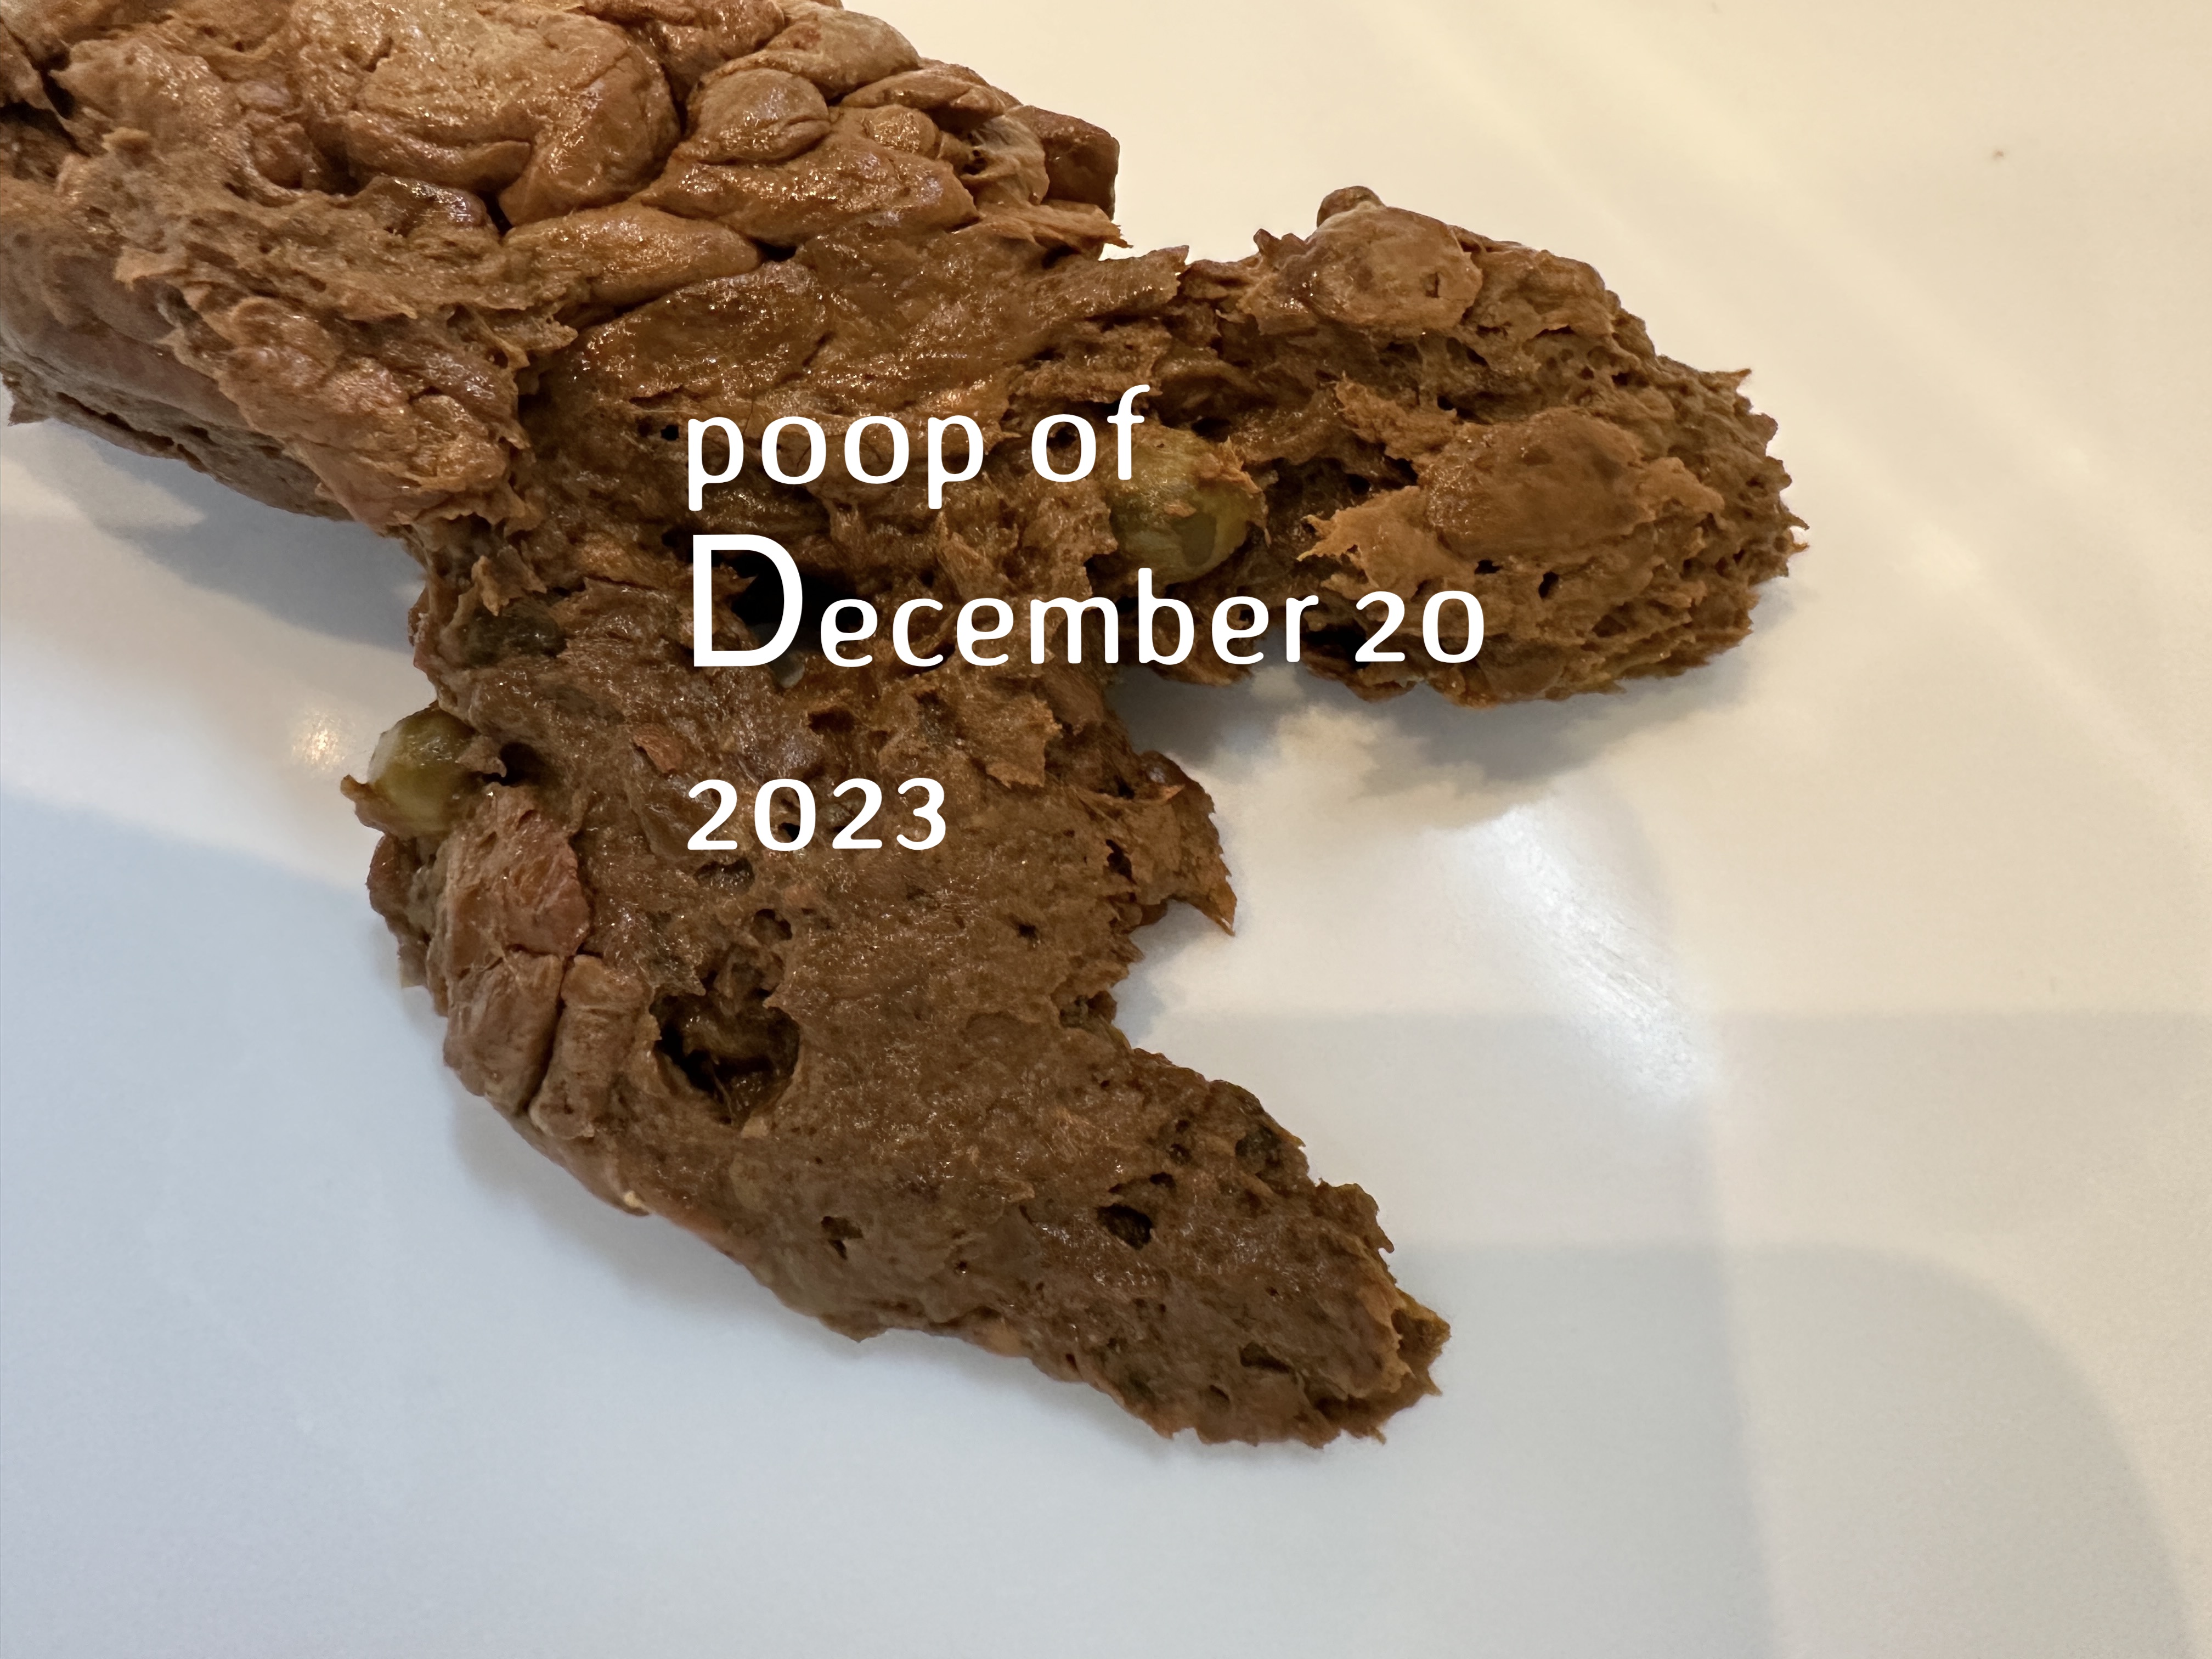 My poop of December 20 2023